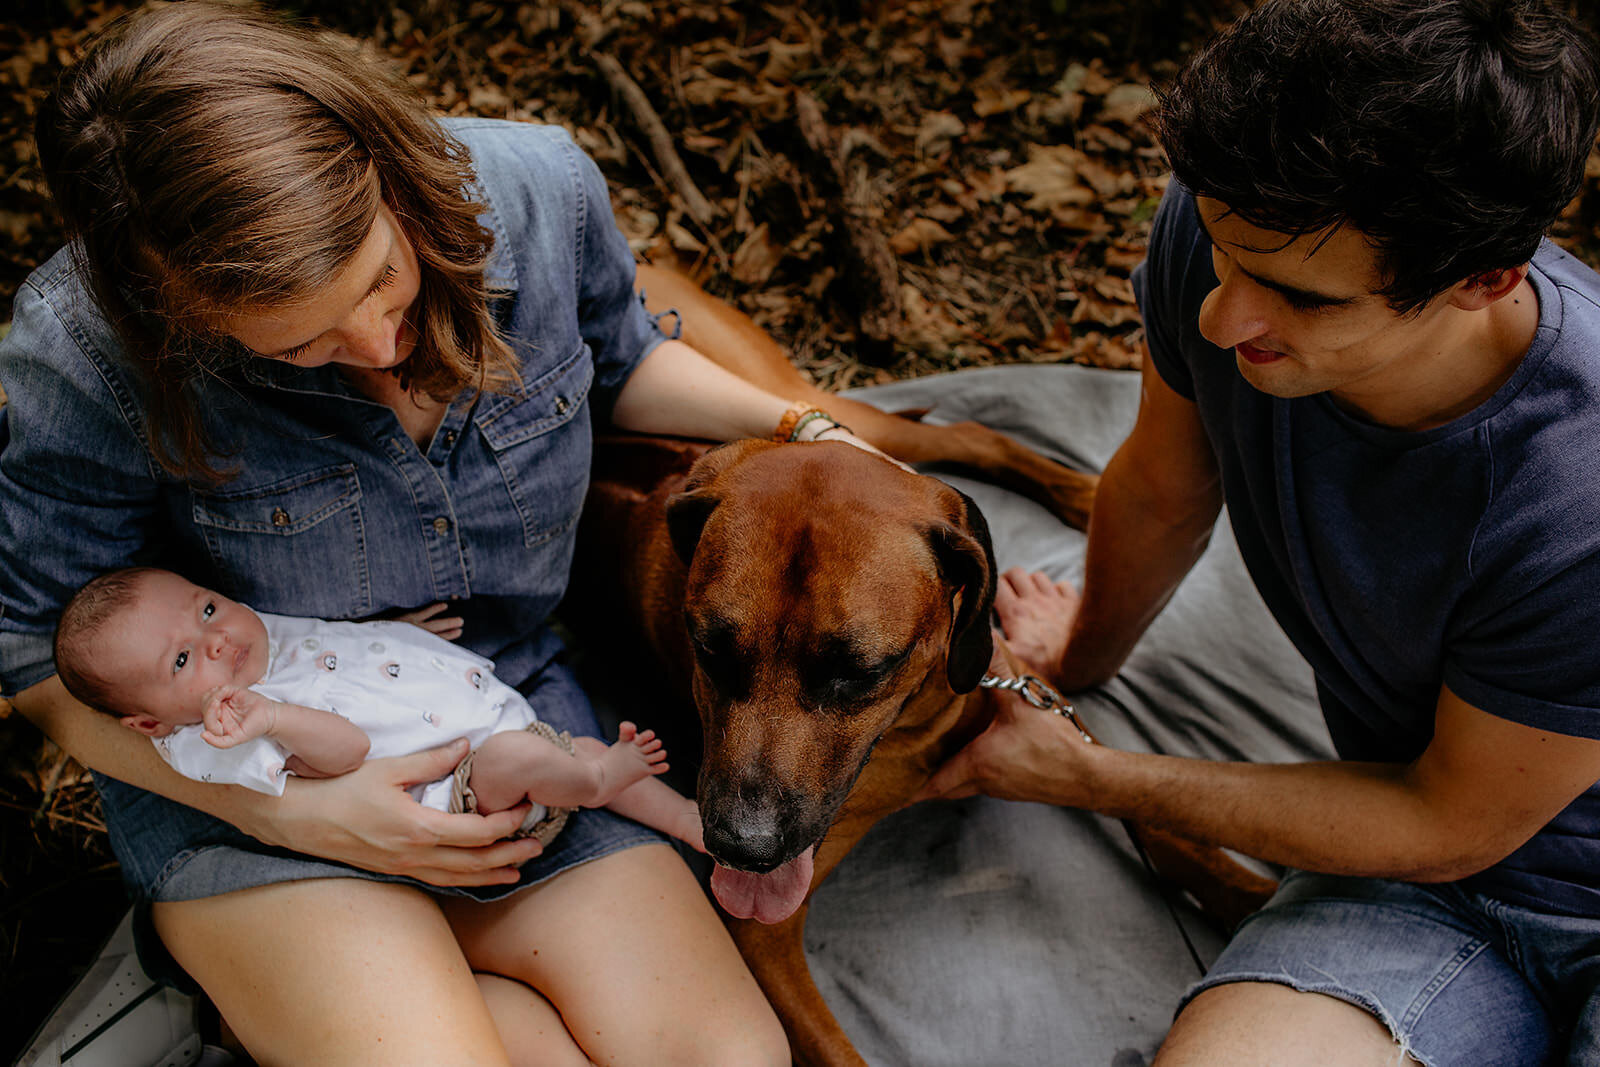 Het hele gezin op de foto, newborn en hond erbij.